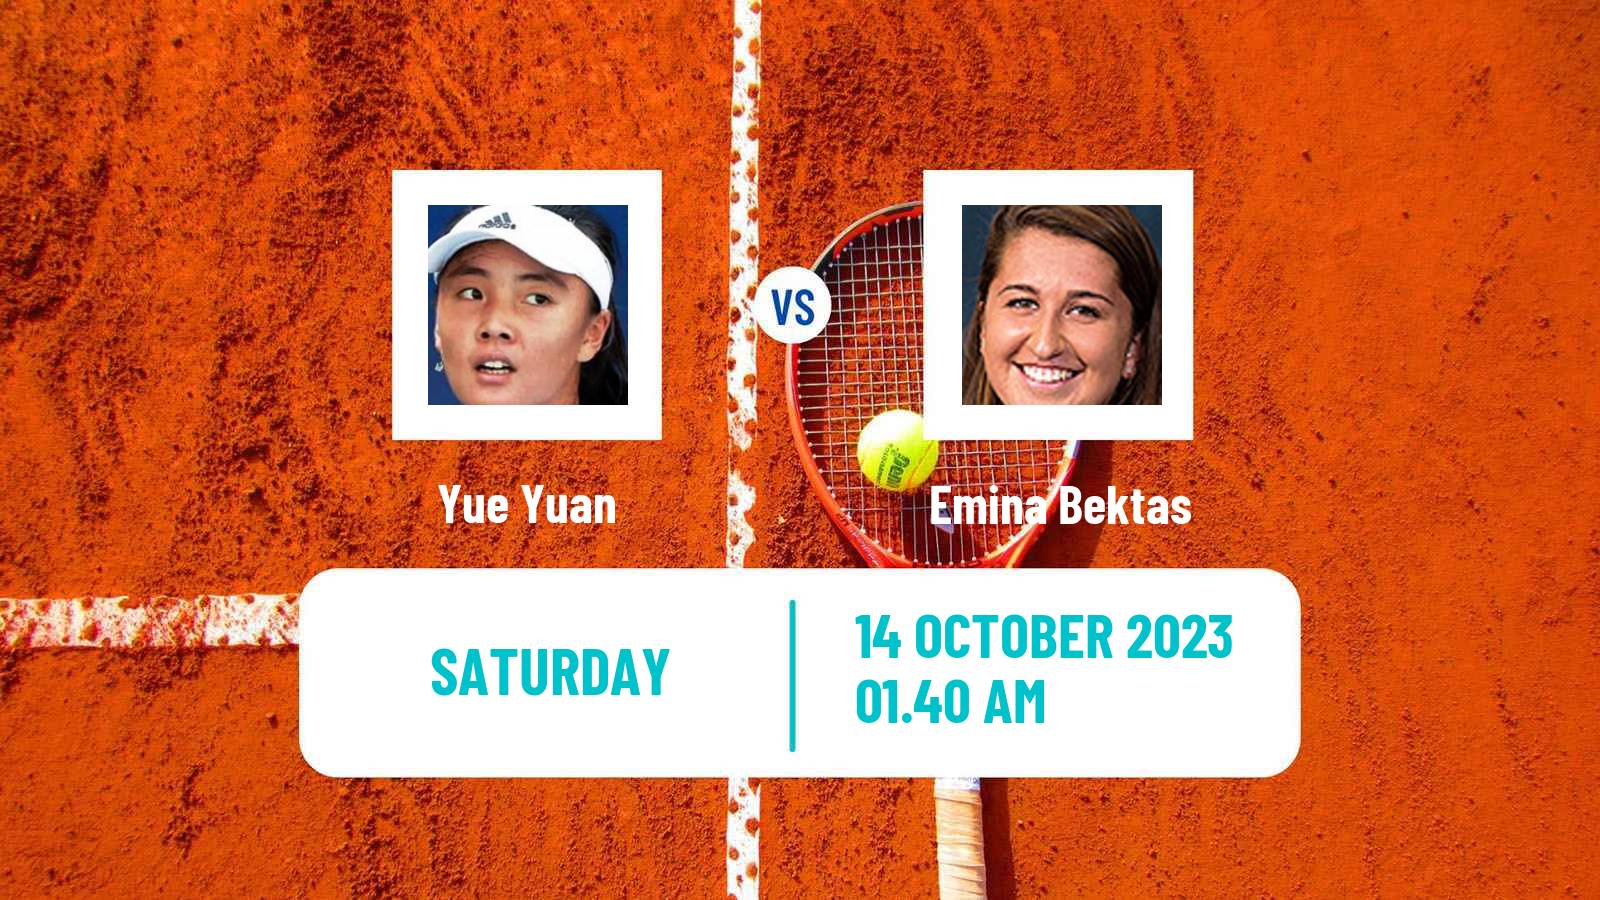 Tennis WTA Seoul Yue Yuan - Emina Bektas